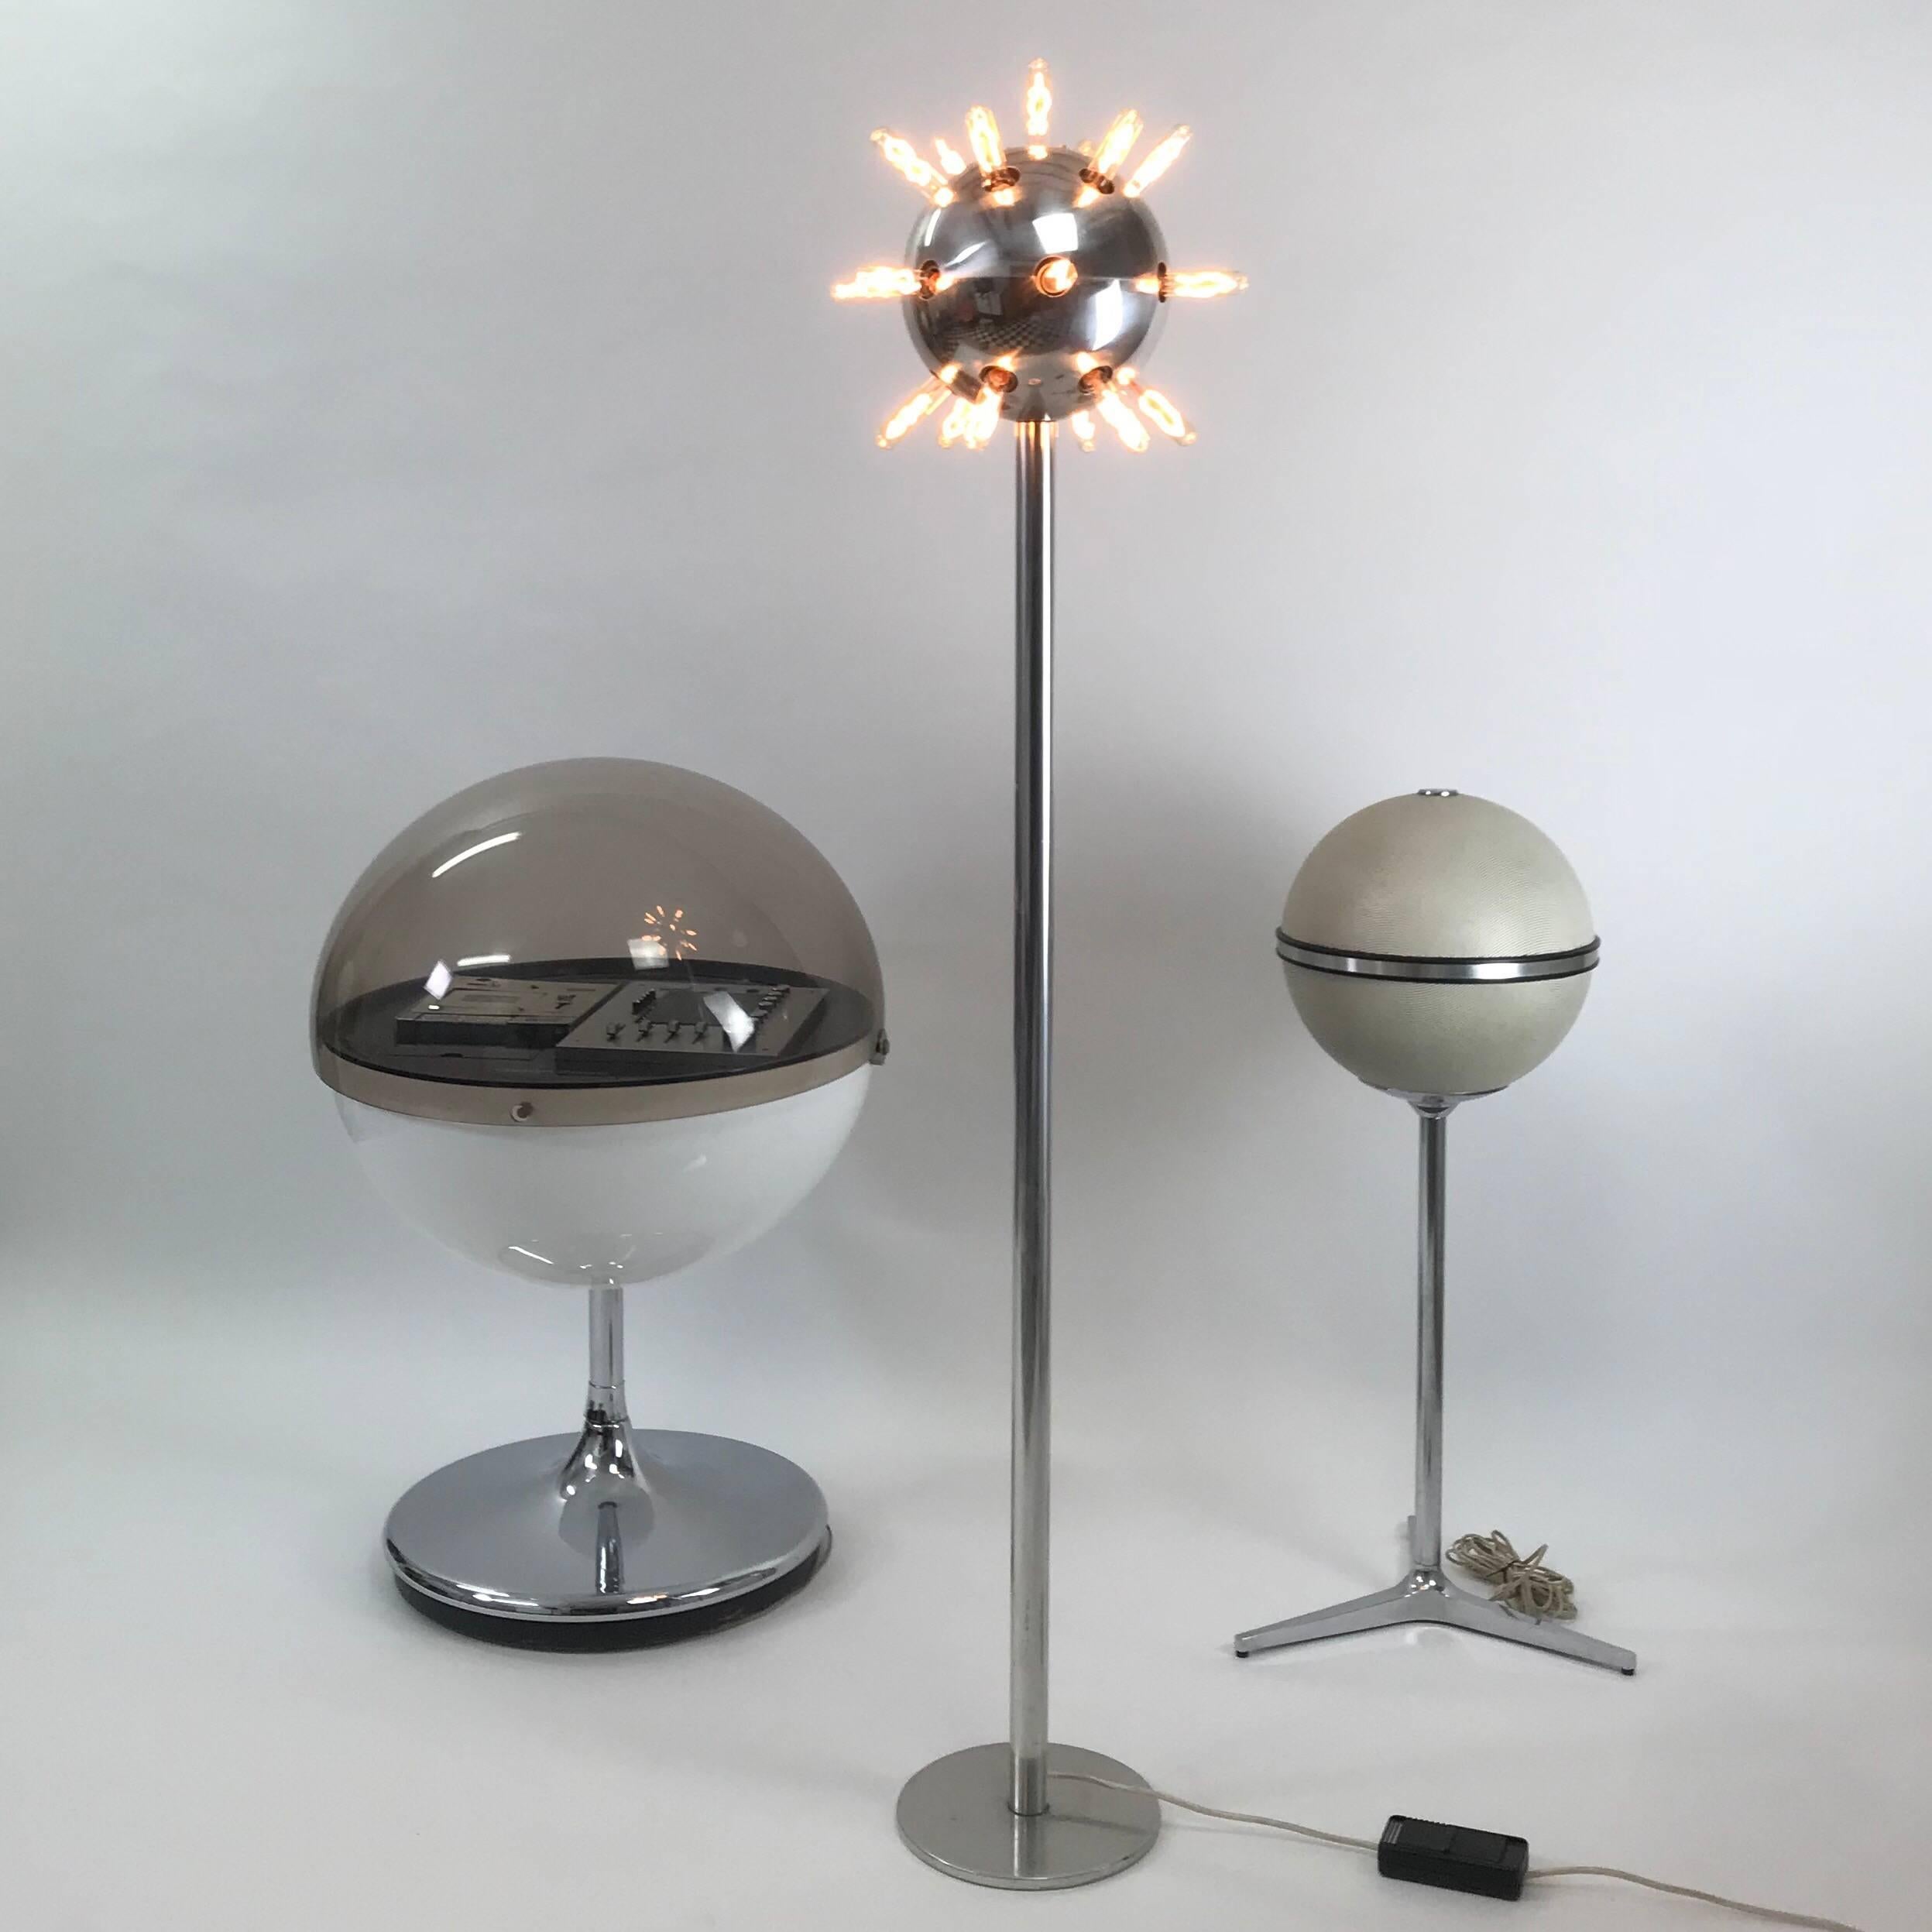 Schöne und seltene verchromte Stehlampe aus den späten 1950er Jahren von Temde (Schweizer / deutscher Hersteller). 

Die Leuchte besteht aus 19 E14/E12-Glühbirnenfassungen, die um den kugelförmigen Leuchtenkopf angeordnet sind.

Guter